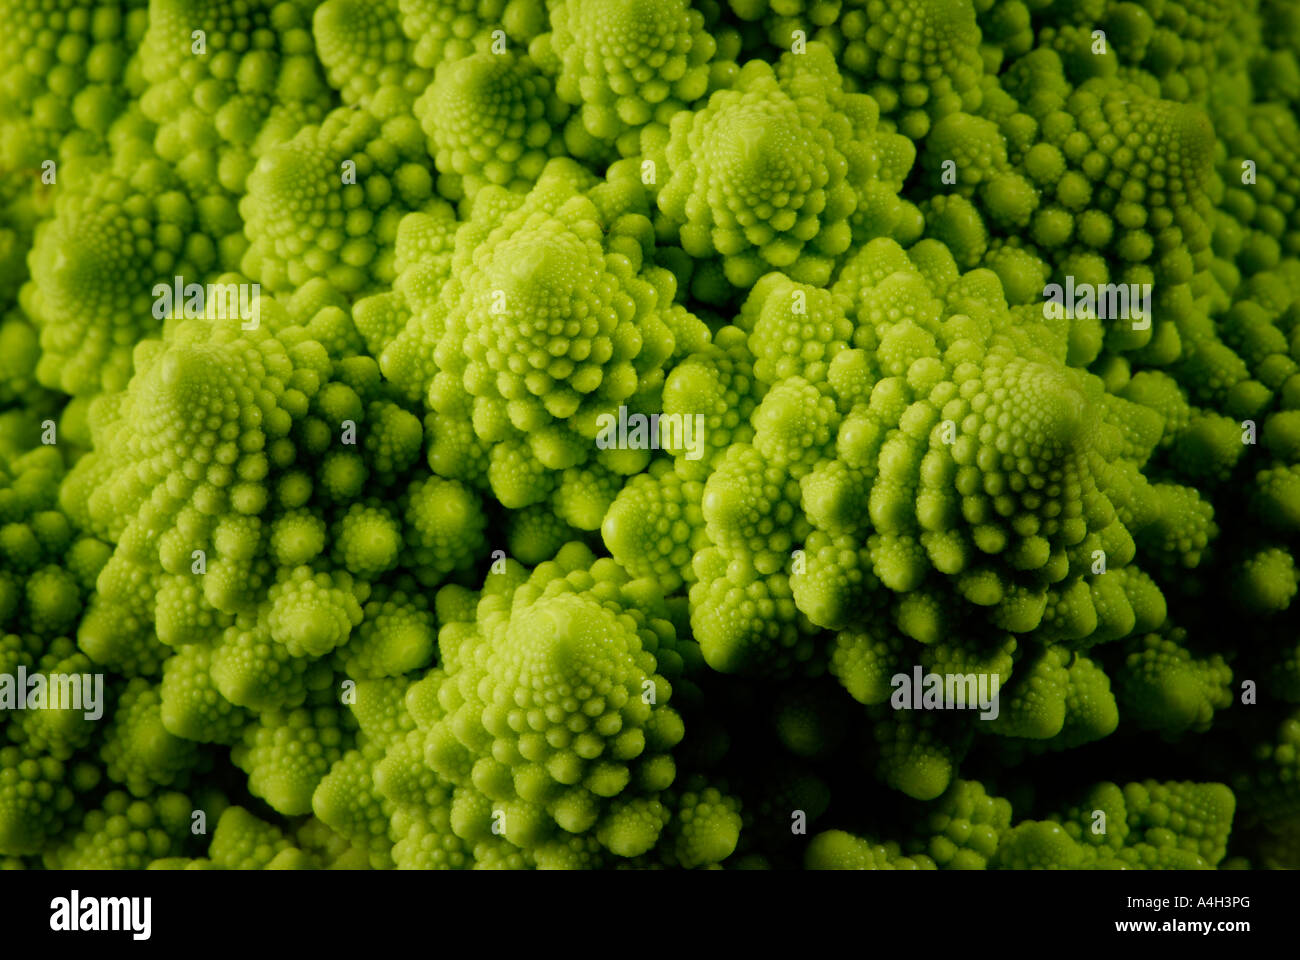 Romanescu in dettaglio (Brassica oleracea) Foto Stock